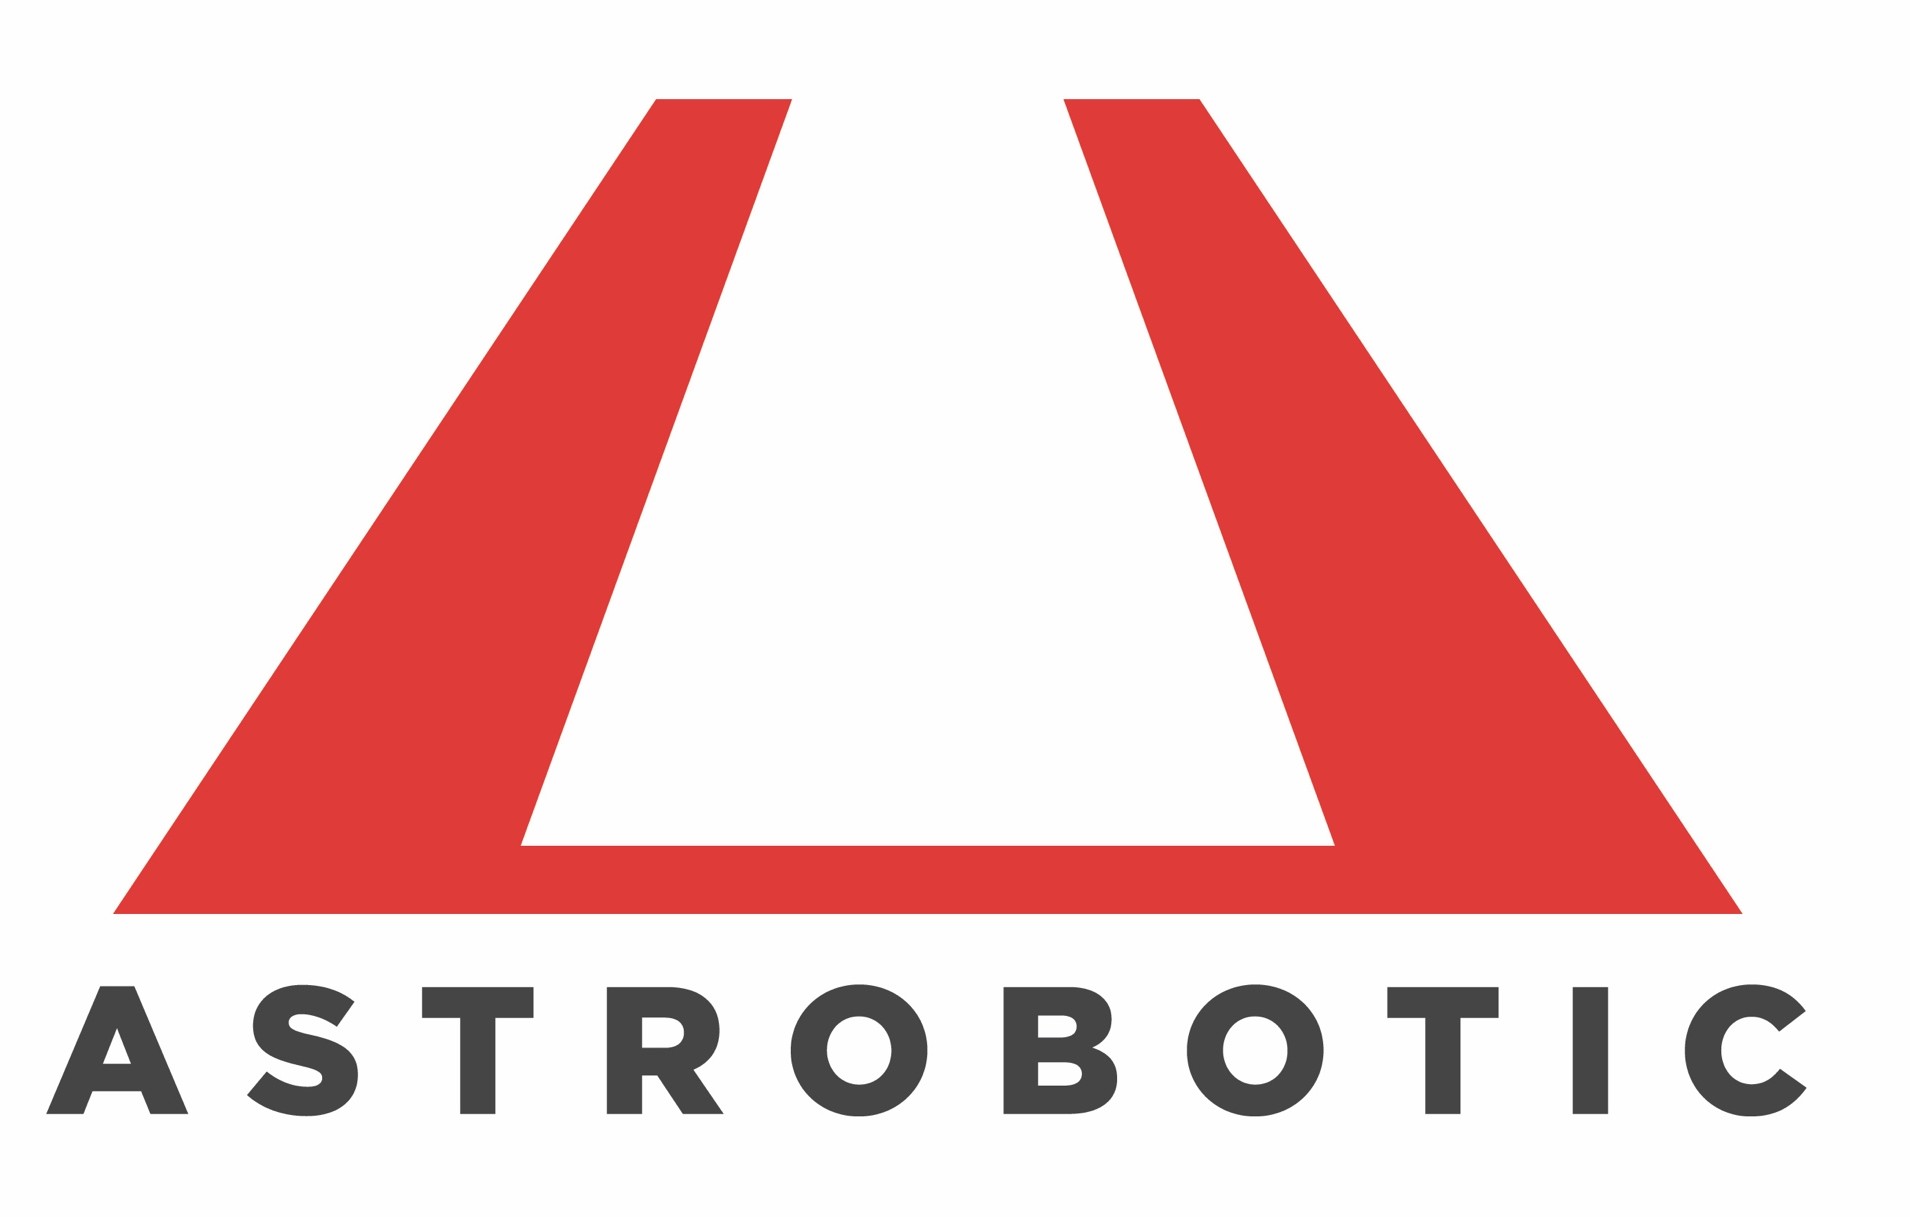 Astrobotic